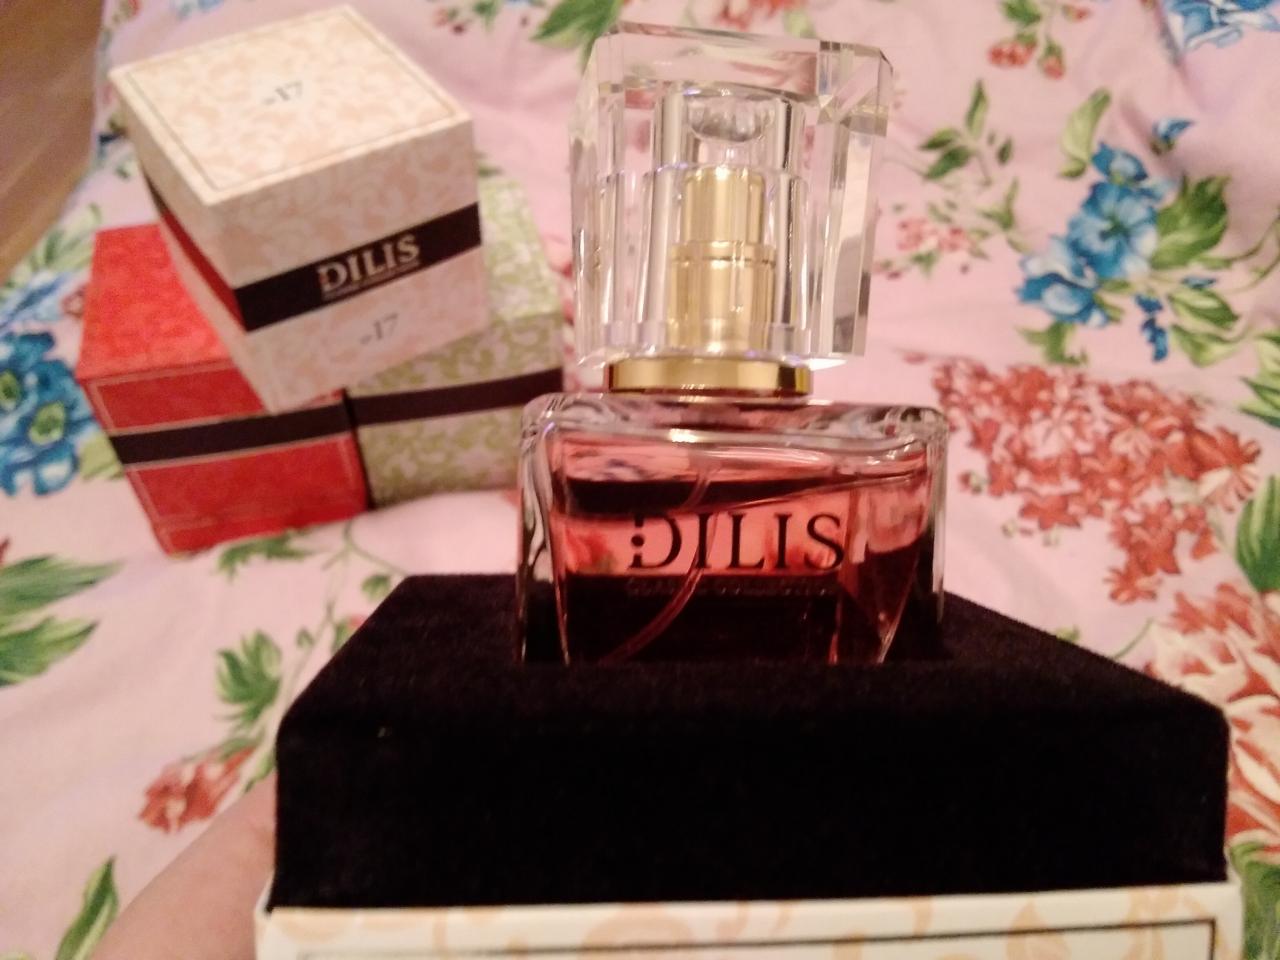 Отзыв на товар: Духи Classic Collection. Dilis Parfum. Вид 1 от 27.04.2023 